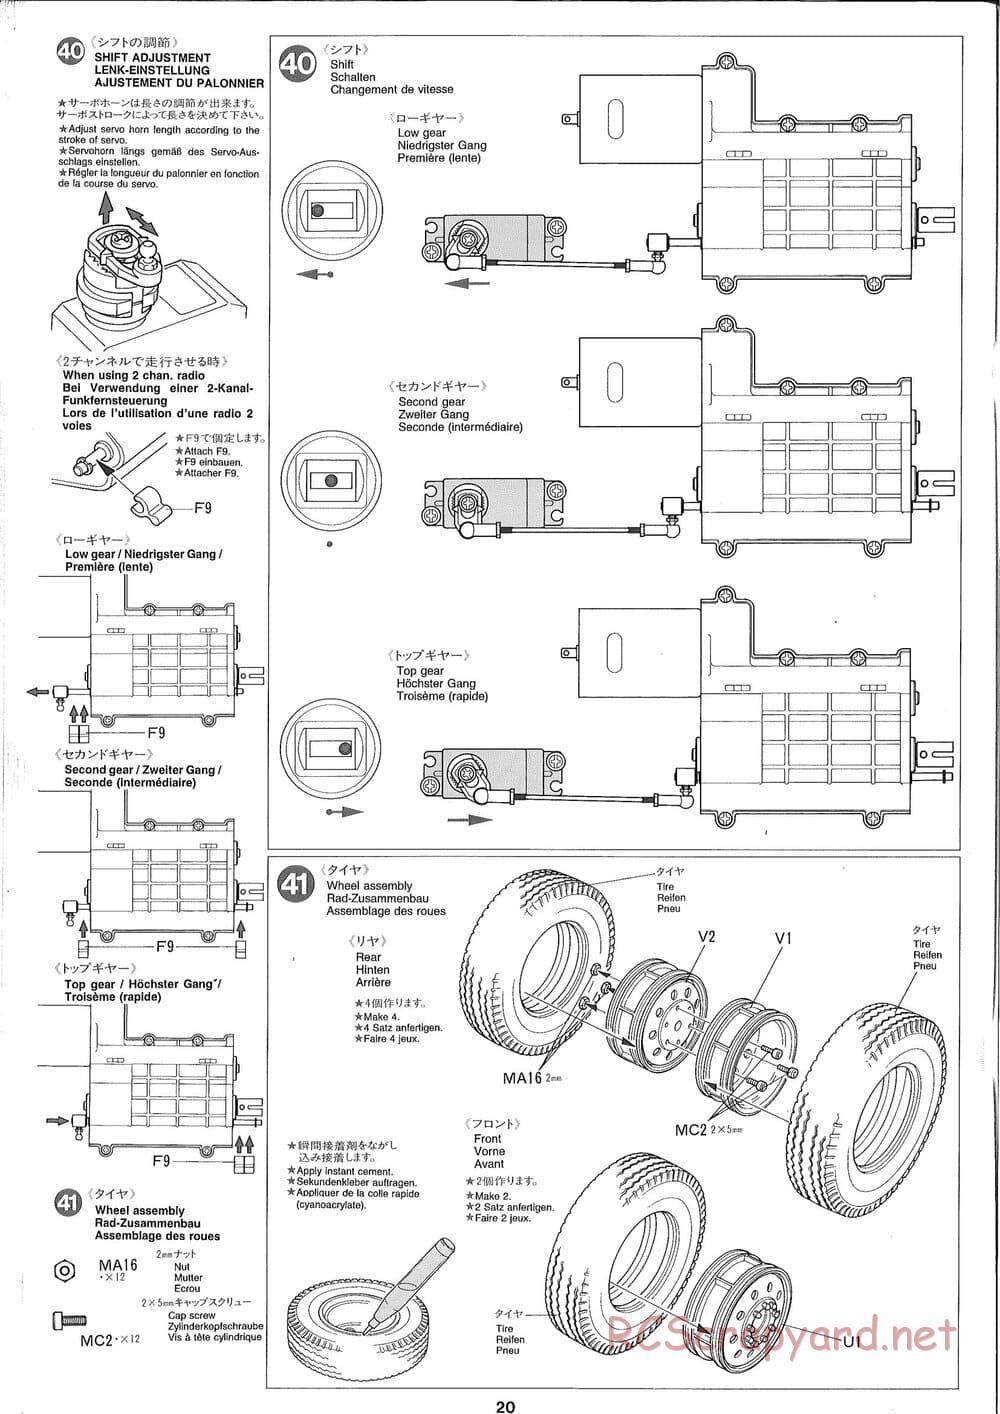 Tamiya - Ford Aeromax - Manual - Page 20